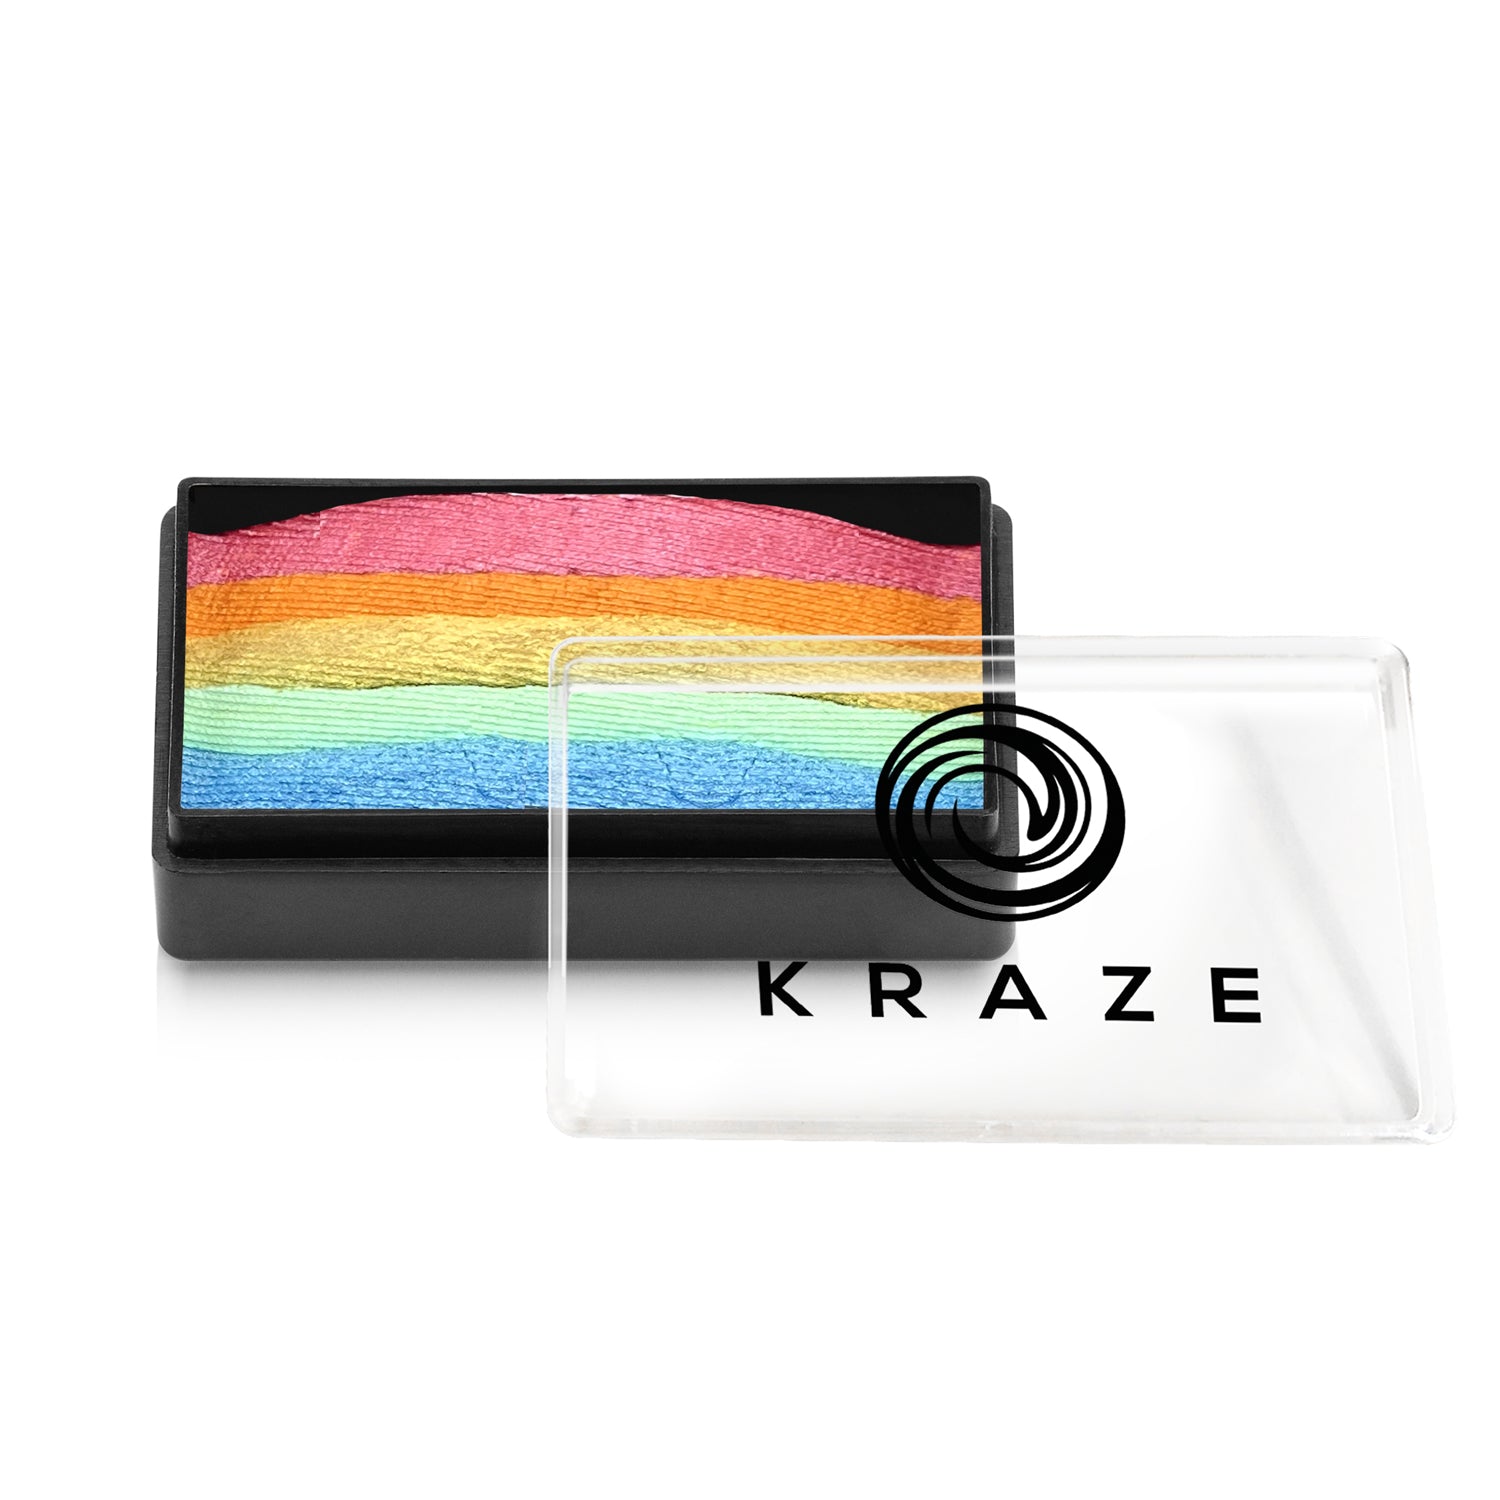 Kraze FX Domed 1-Stroke Pearl Split Cake - 25 gm - Sherbet Punch